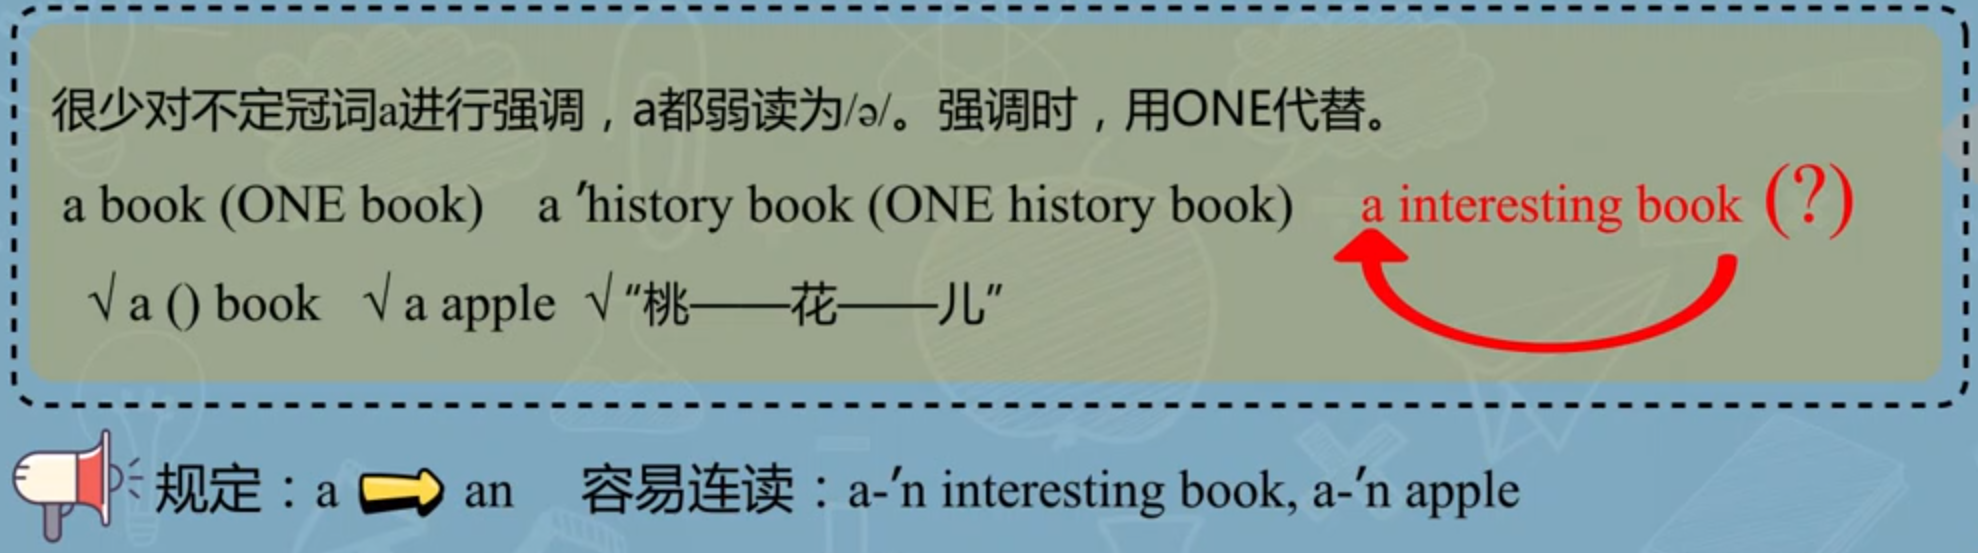 中国地质大学英语语音学习笔记（四）：英语连读——弱读、冠词连读方法（包括元音字母前添加an的原因）和词间辅音加元音的连读方法